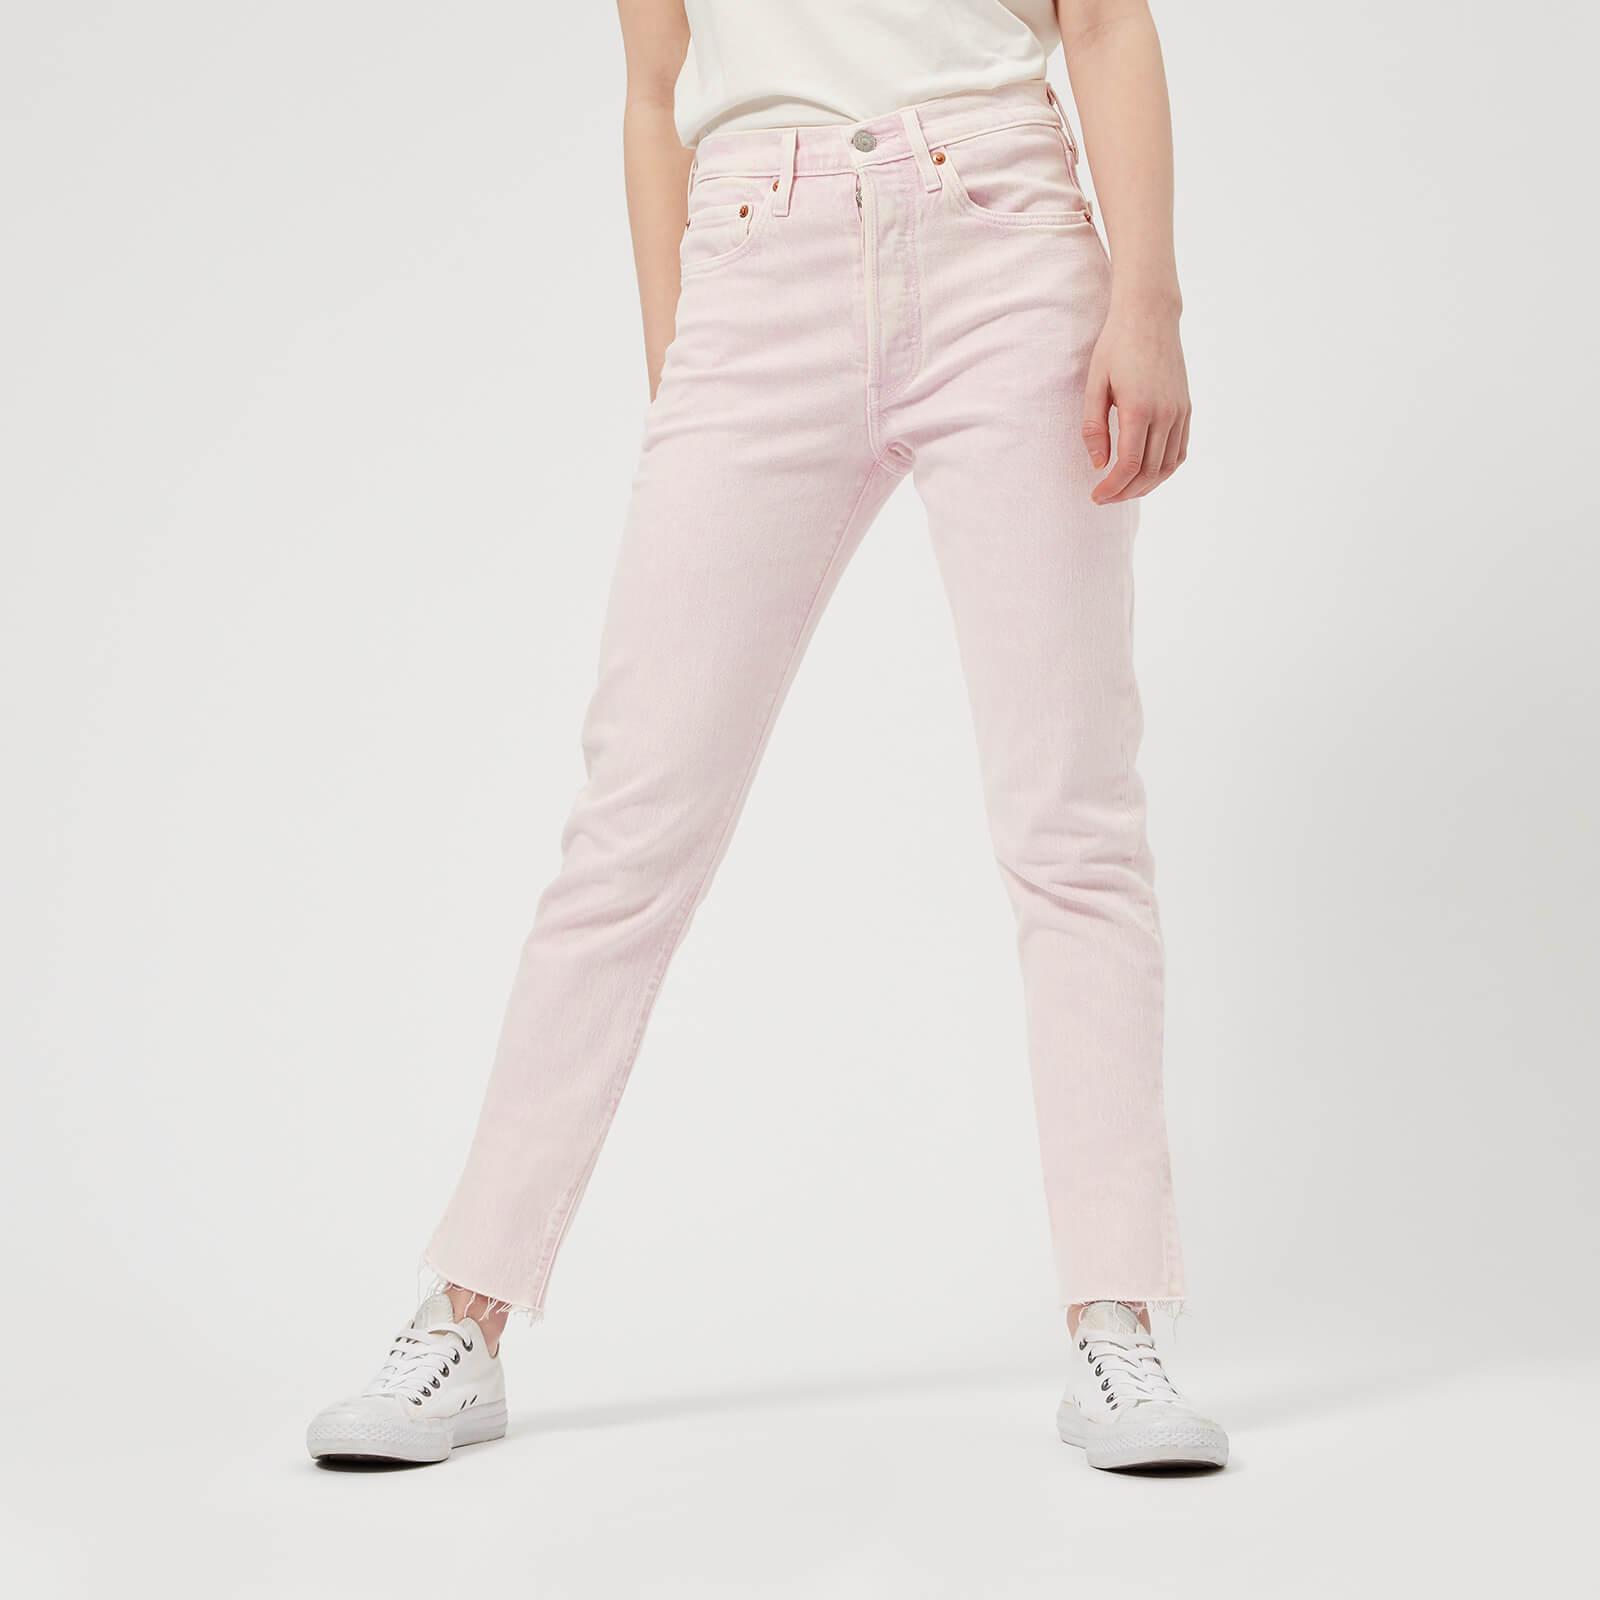 baden Vergissing Meesterschap Levi's 501 Skinny Jeans in Pink | Lyst Canada